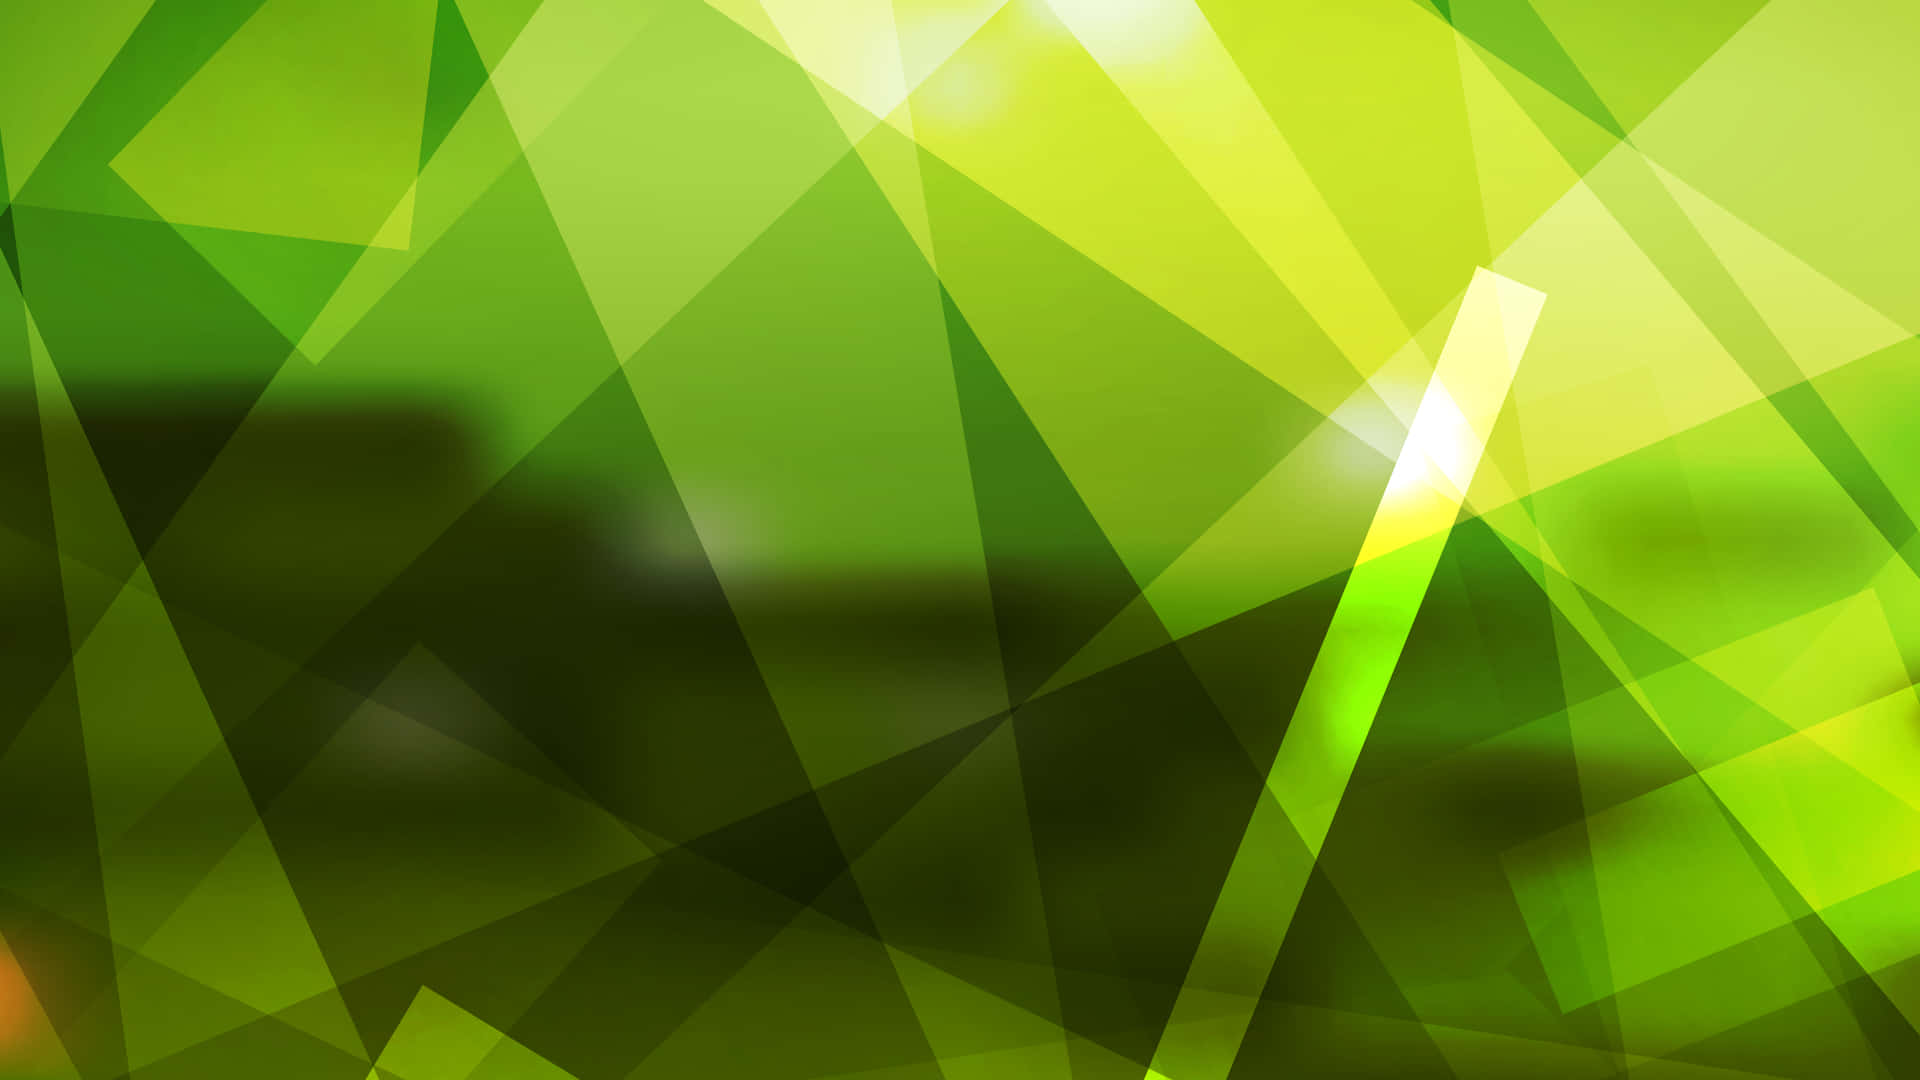 Patróngeométrico Abstracto En Tonos Verdes. Fondo de pantalla